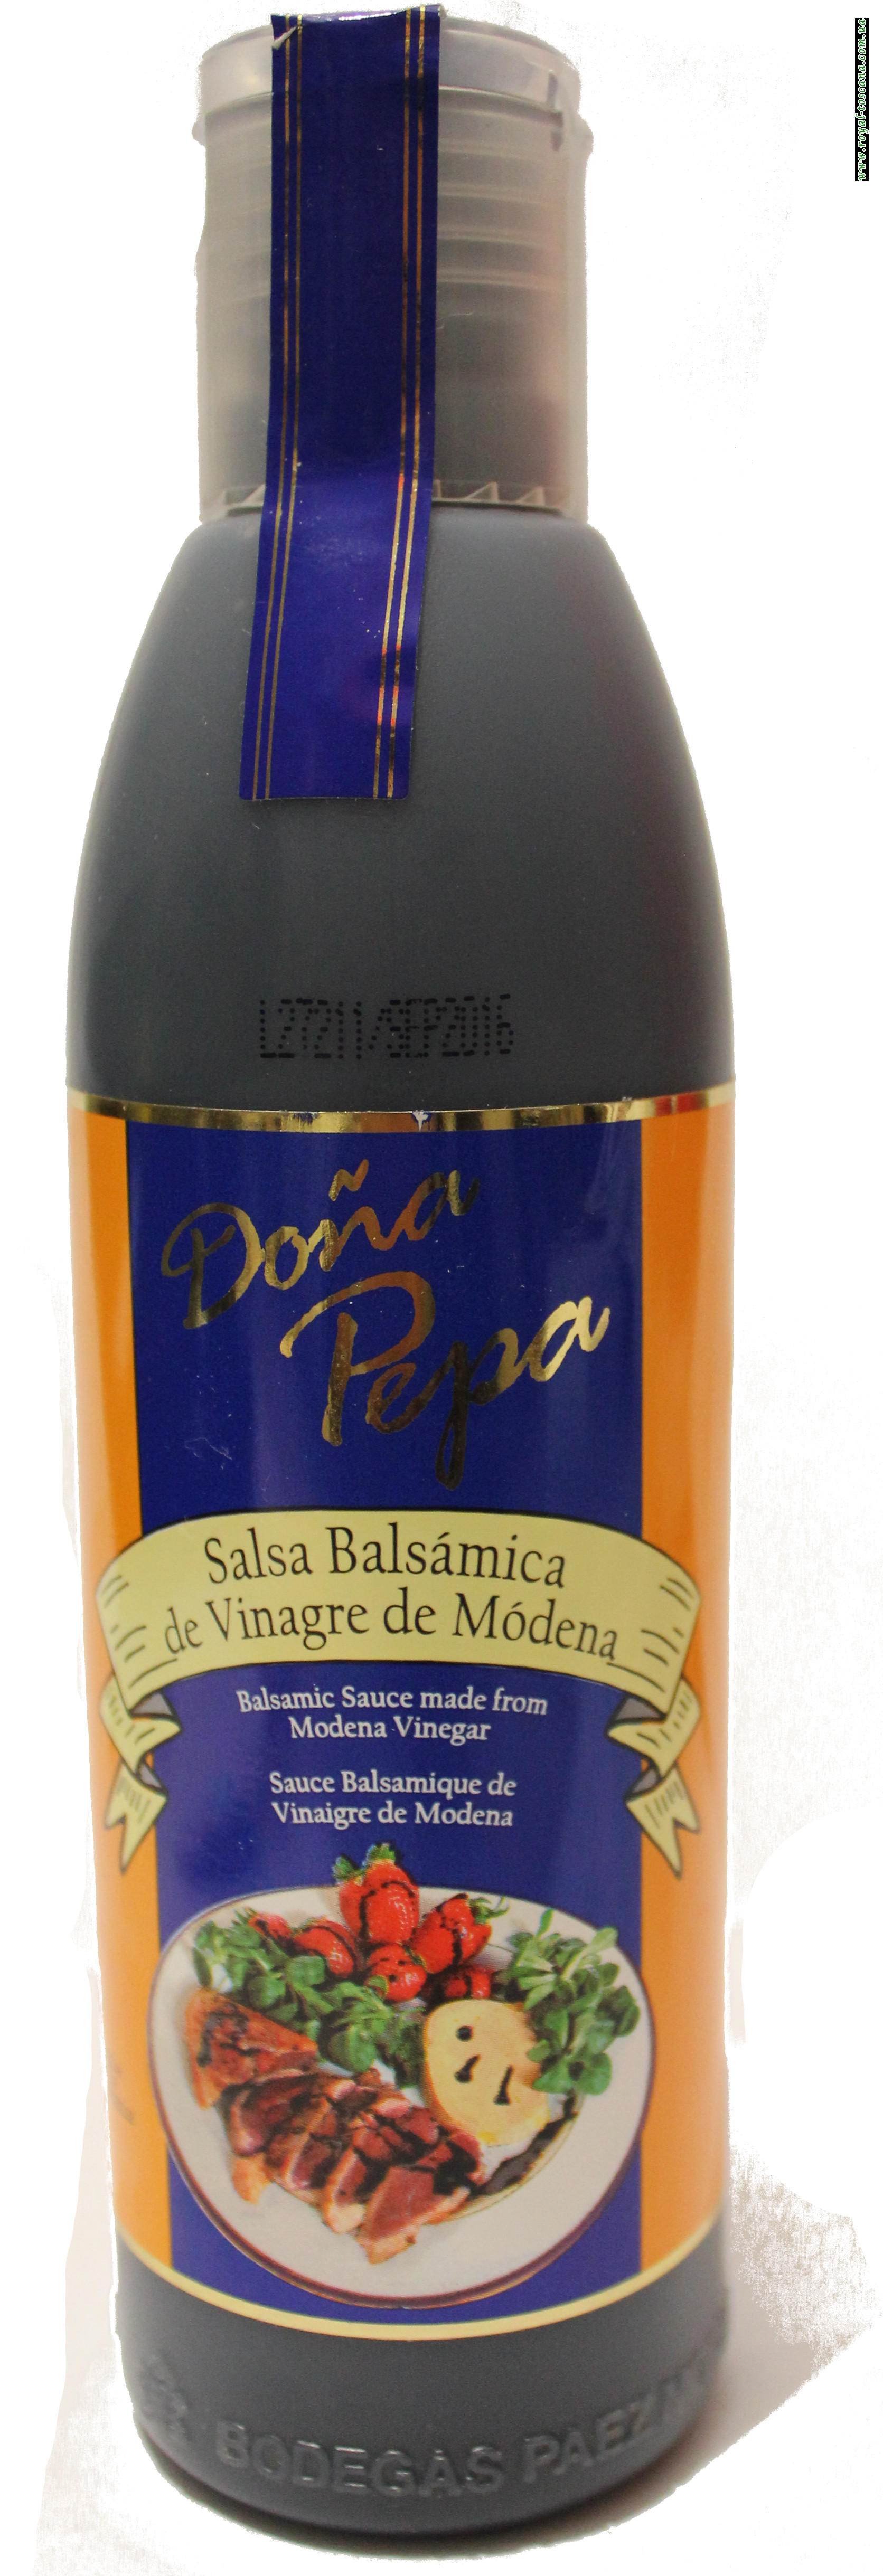 Уксус бальзамический "Dona Pepa" salsa balsamica al vinagre de modena